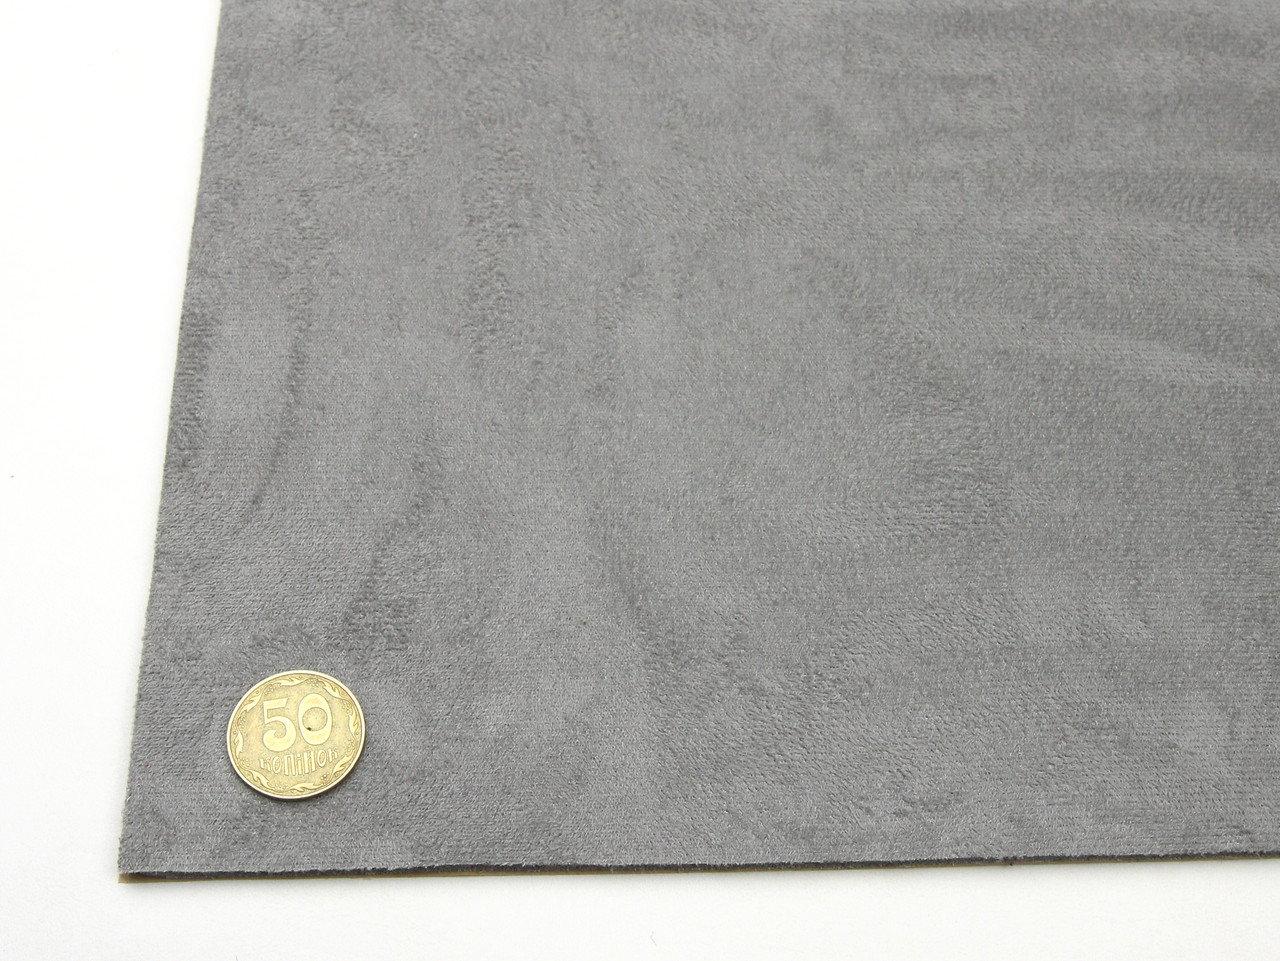 Автоткань самоклейка Антара, цвет серый, на поролоне и сетке, толщина 4мм, лист, Турция детальная фотка